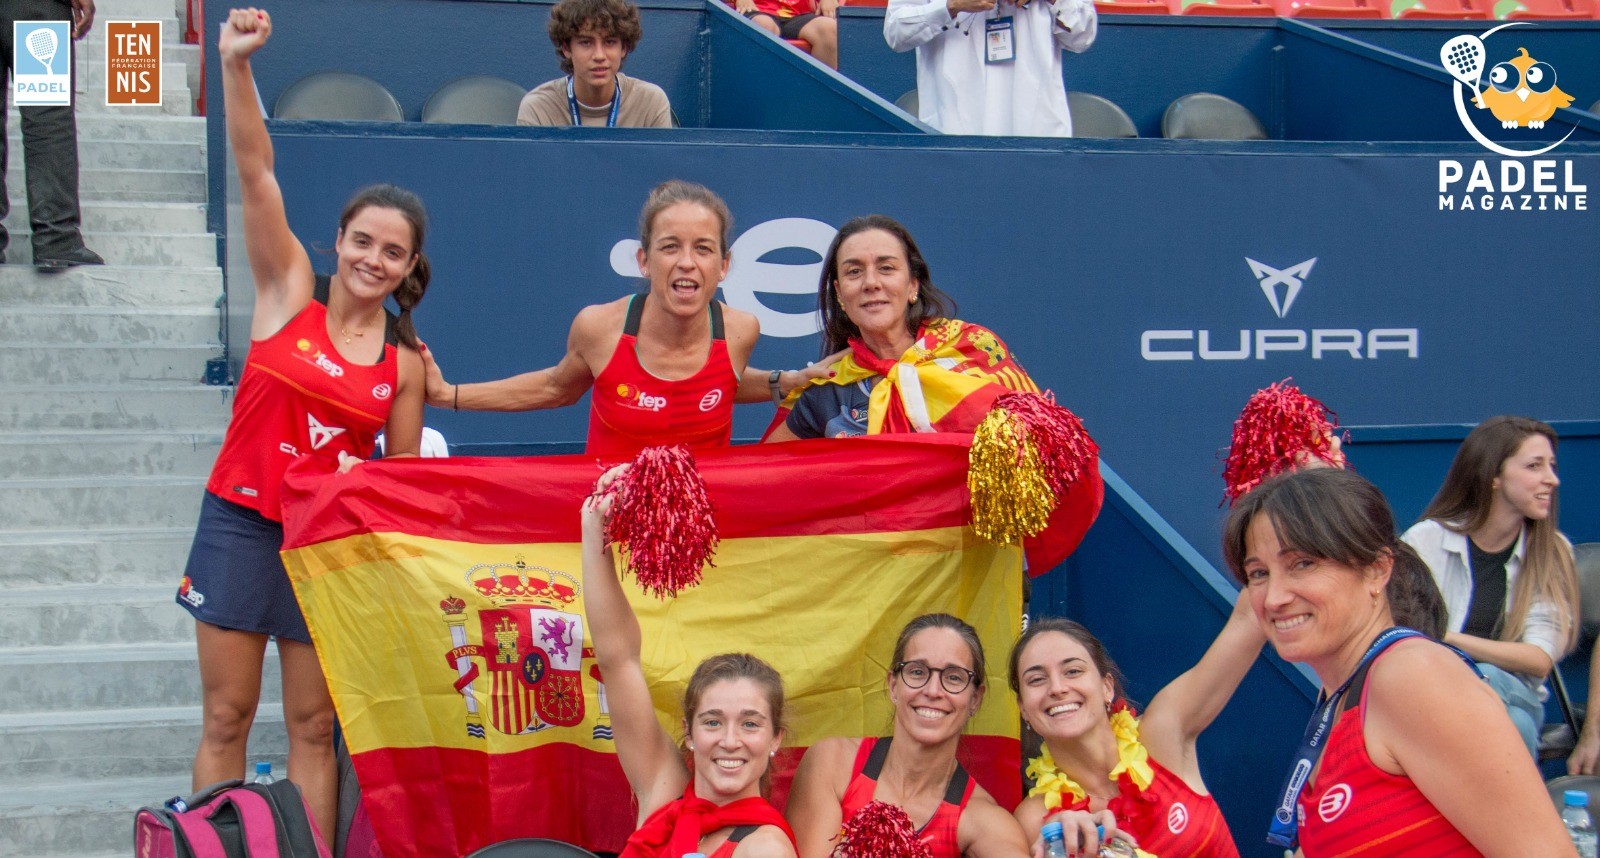 Le padel Tennis “Eten” in Spanje